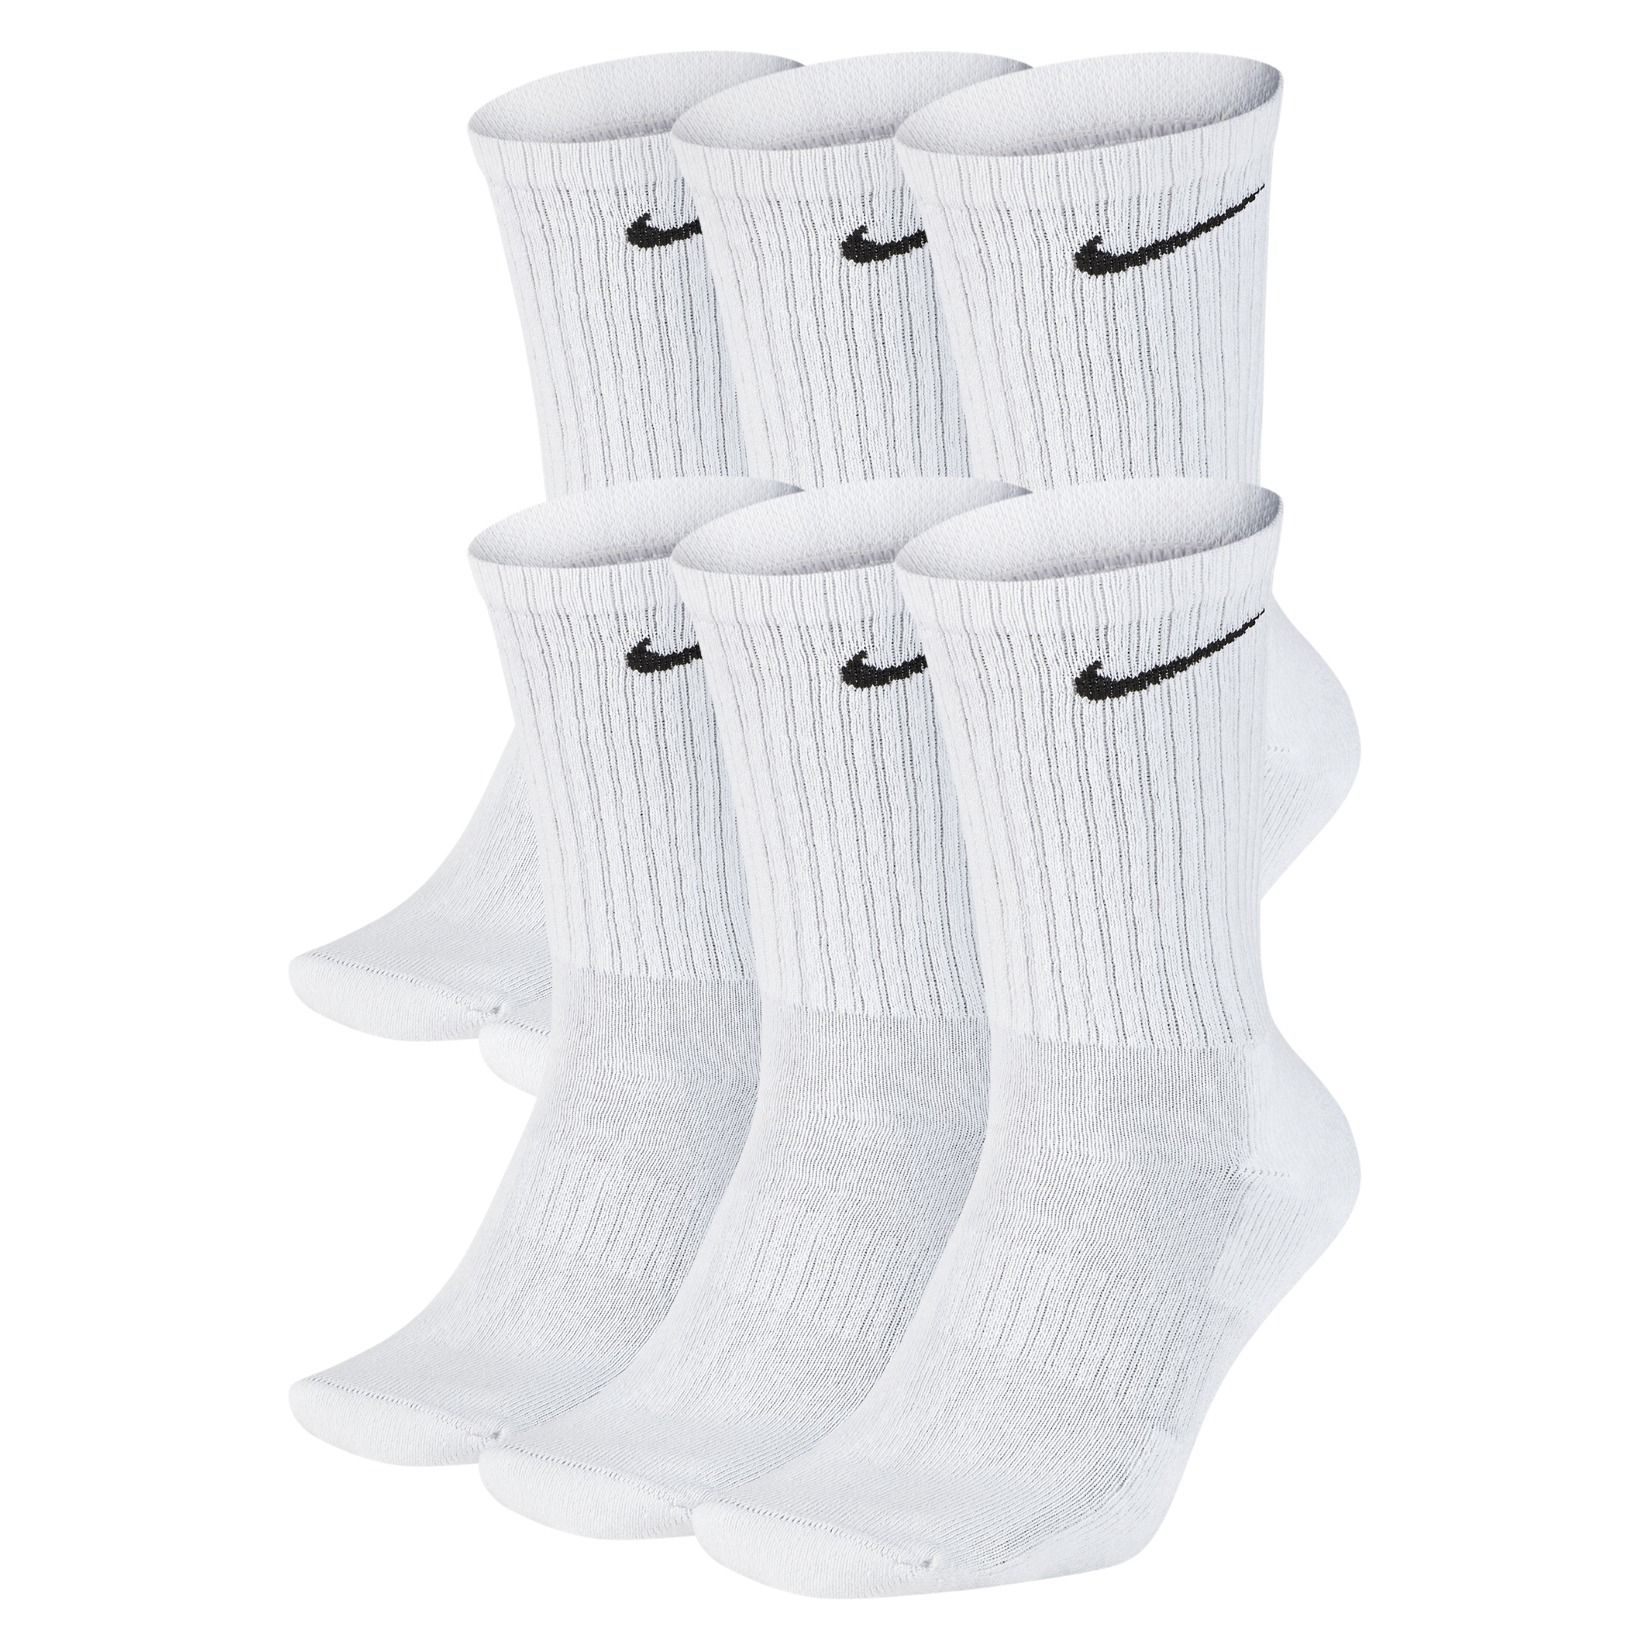 where can you buy nike socks